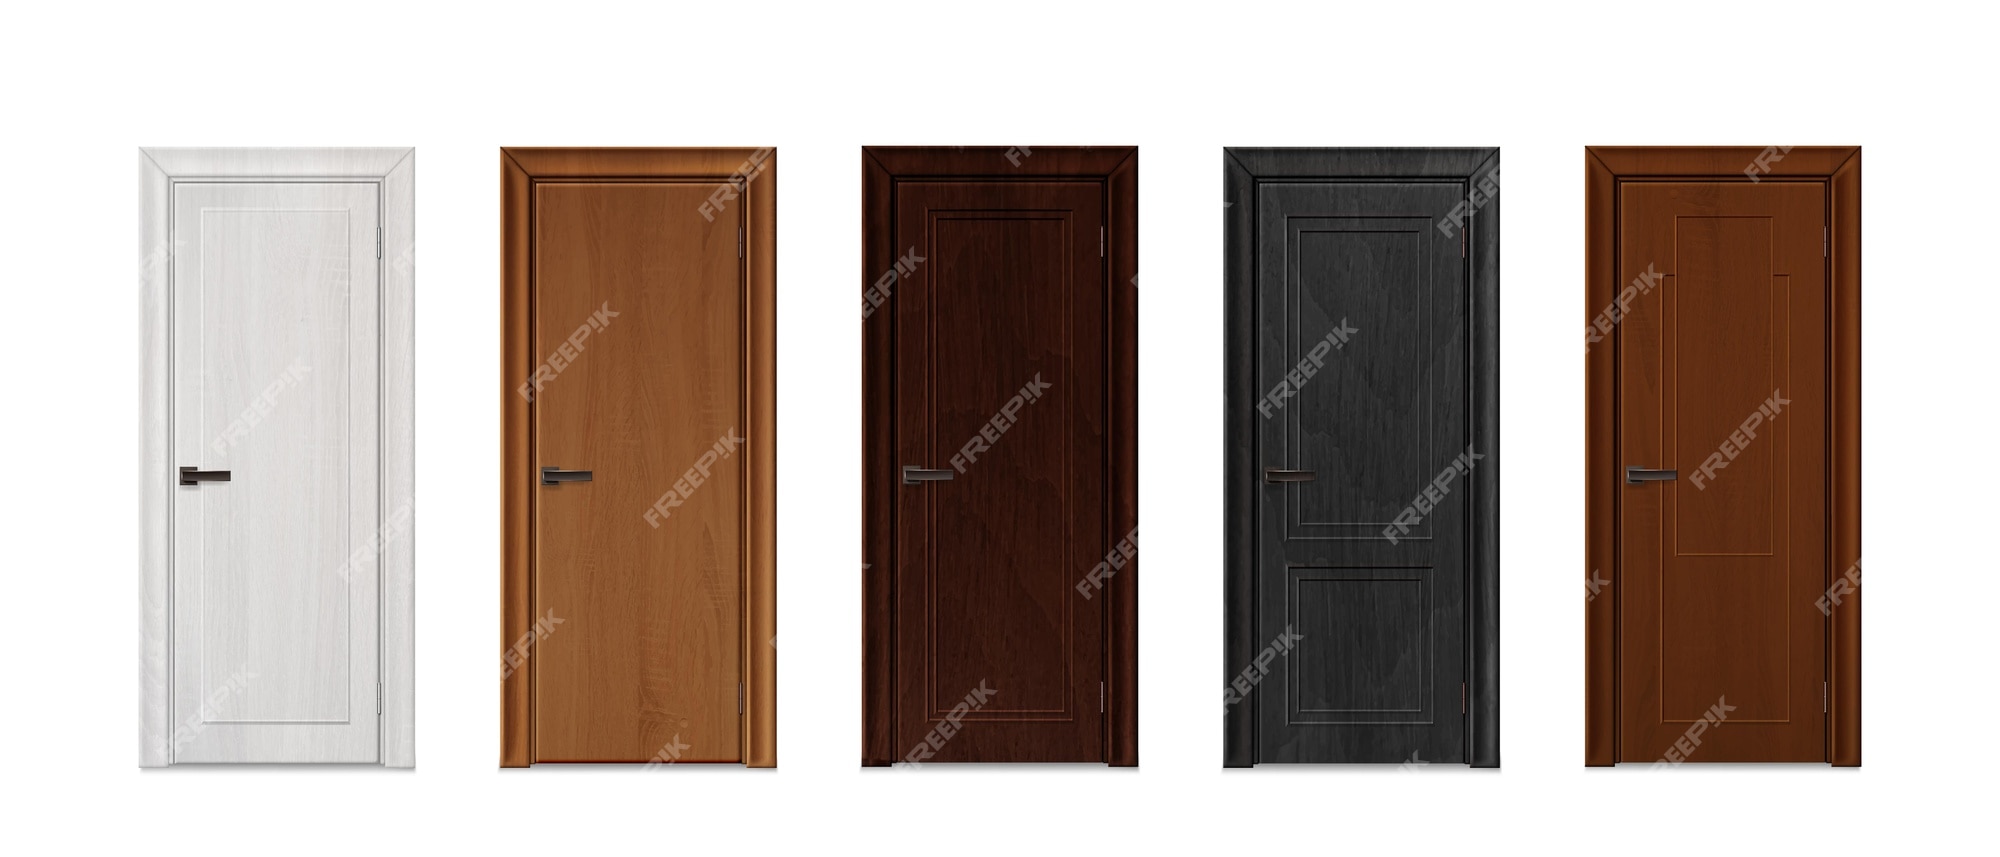 Wood Door Images - Free Download on Freepik